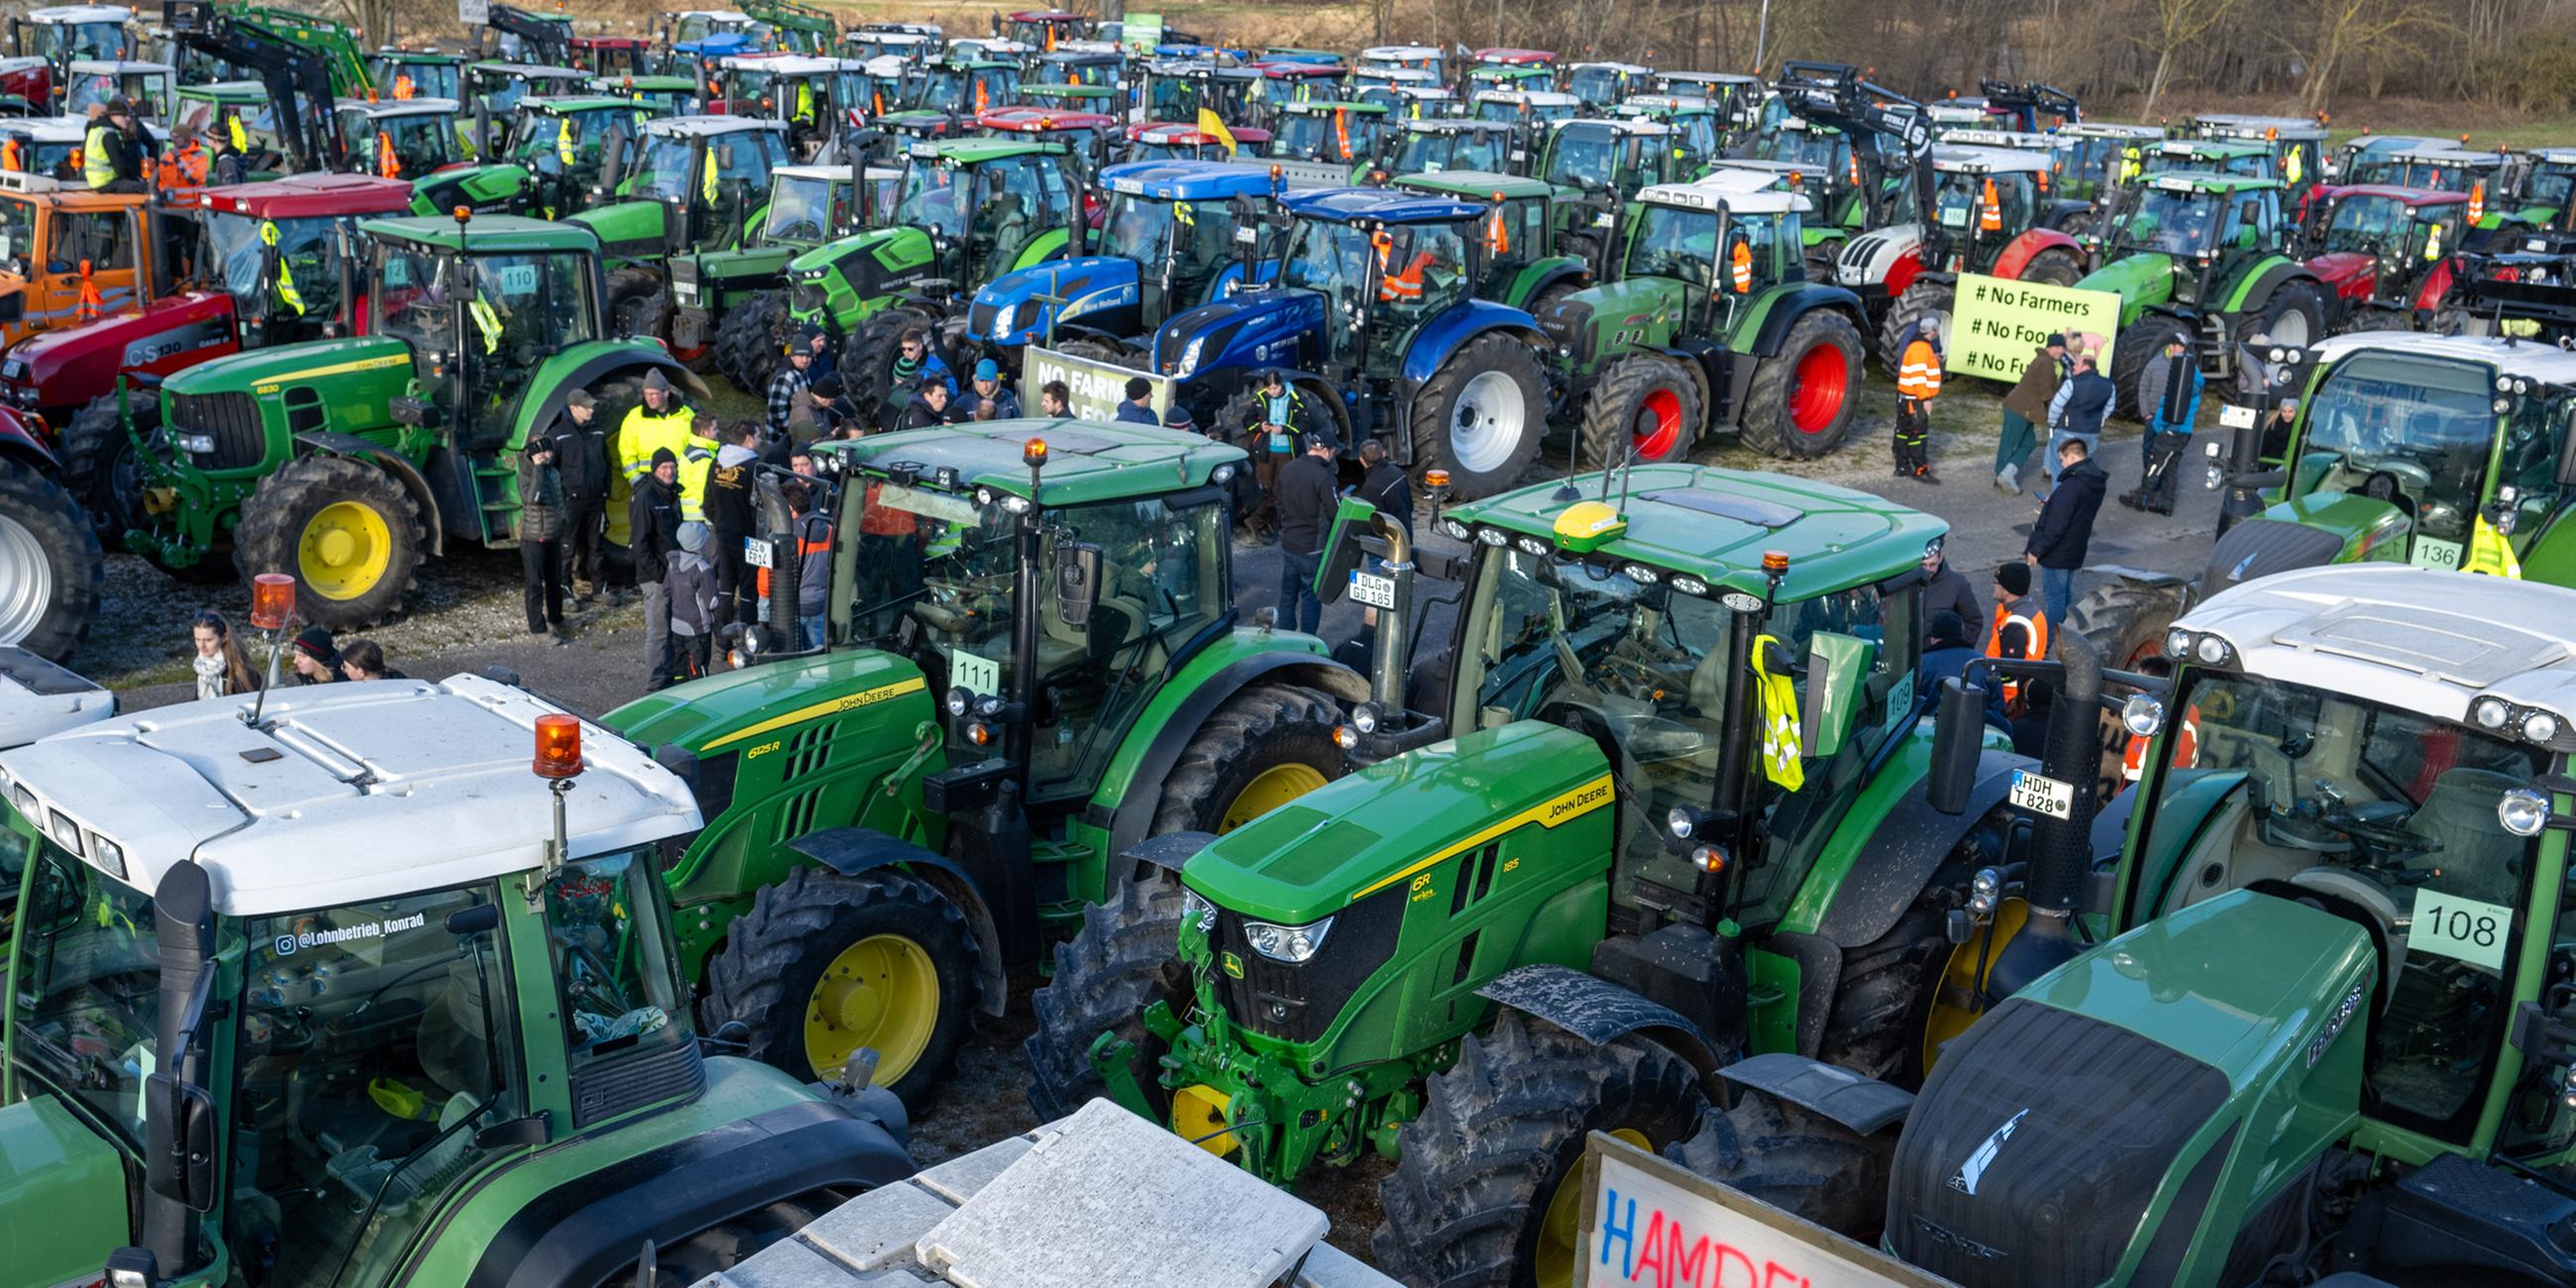 Mehrere hundert Traktoren stehen bei einer Kundgebung des Bauernverbandes gegen die Sparpläne der Bundesregierung auf dem Festplatz.